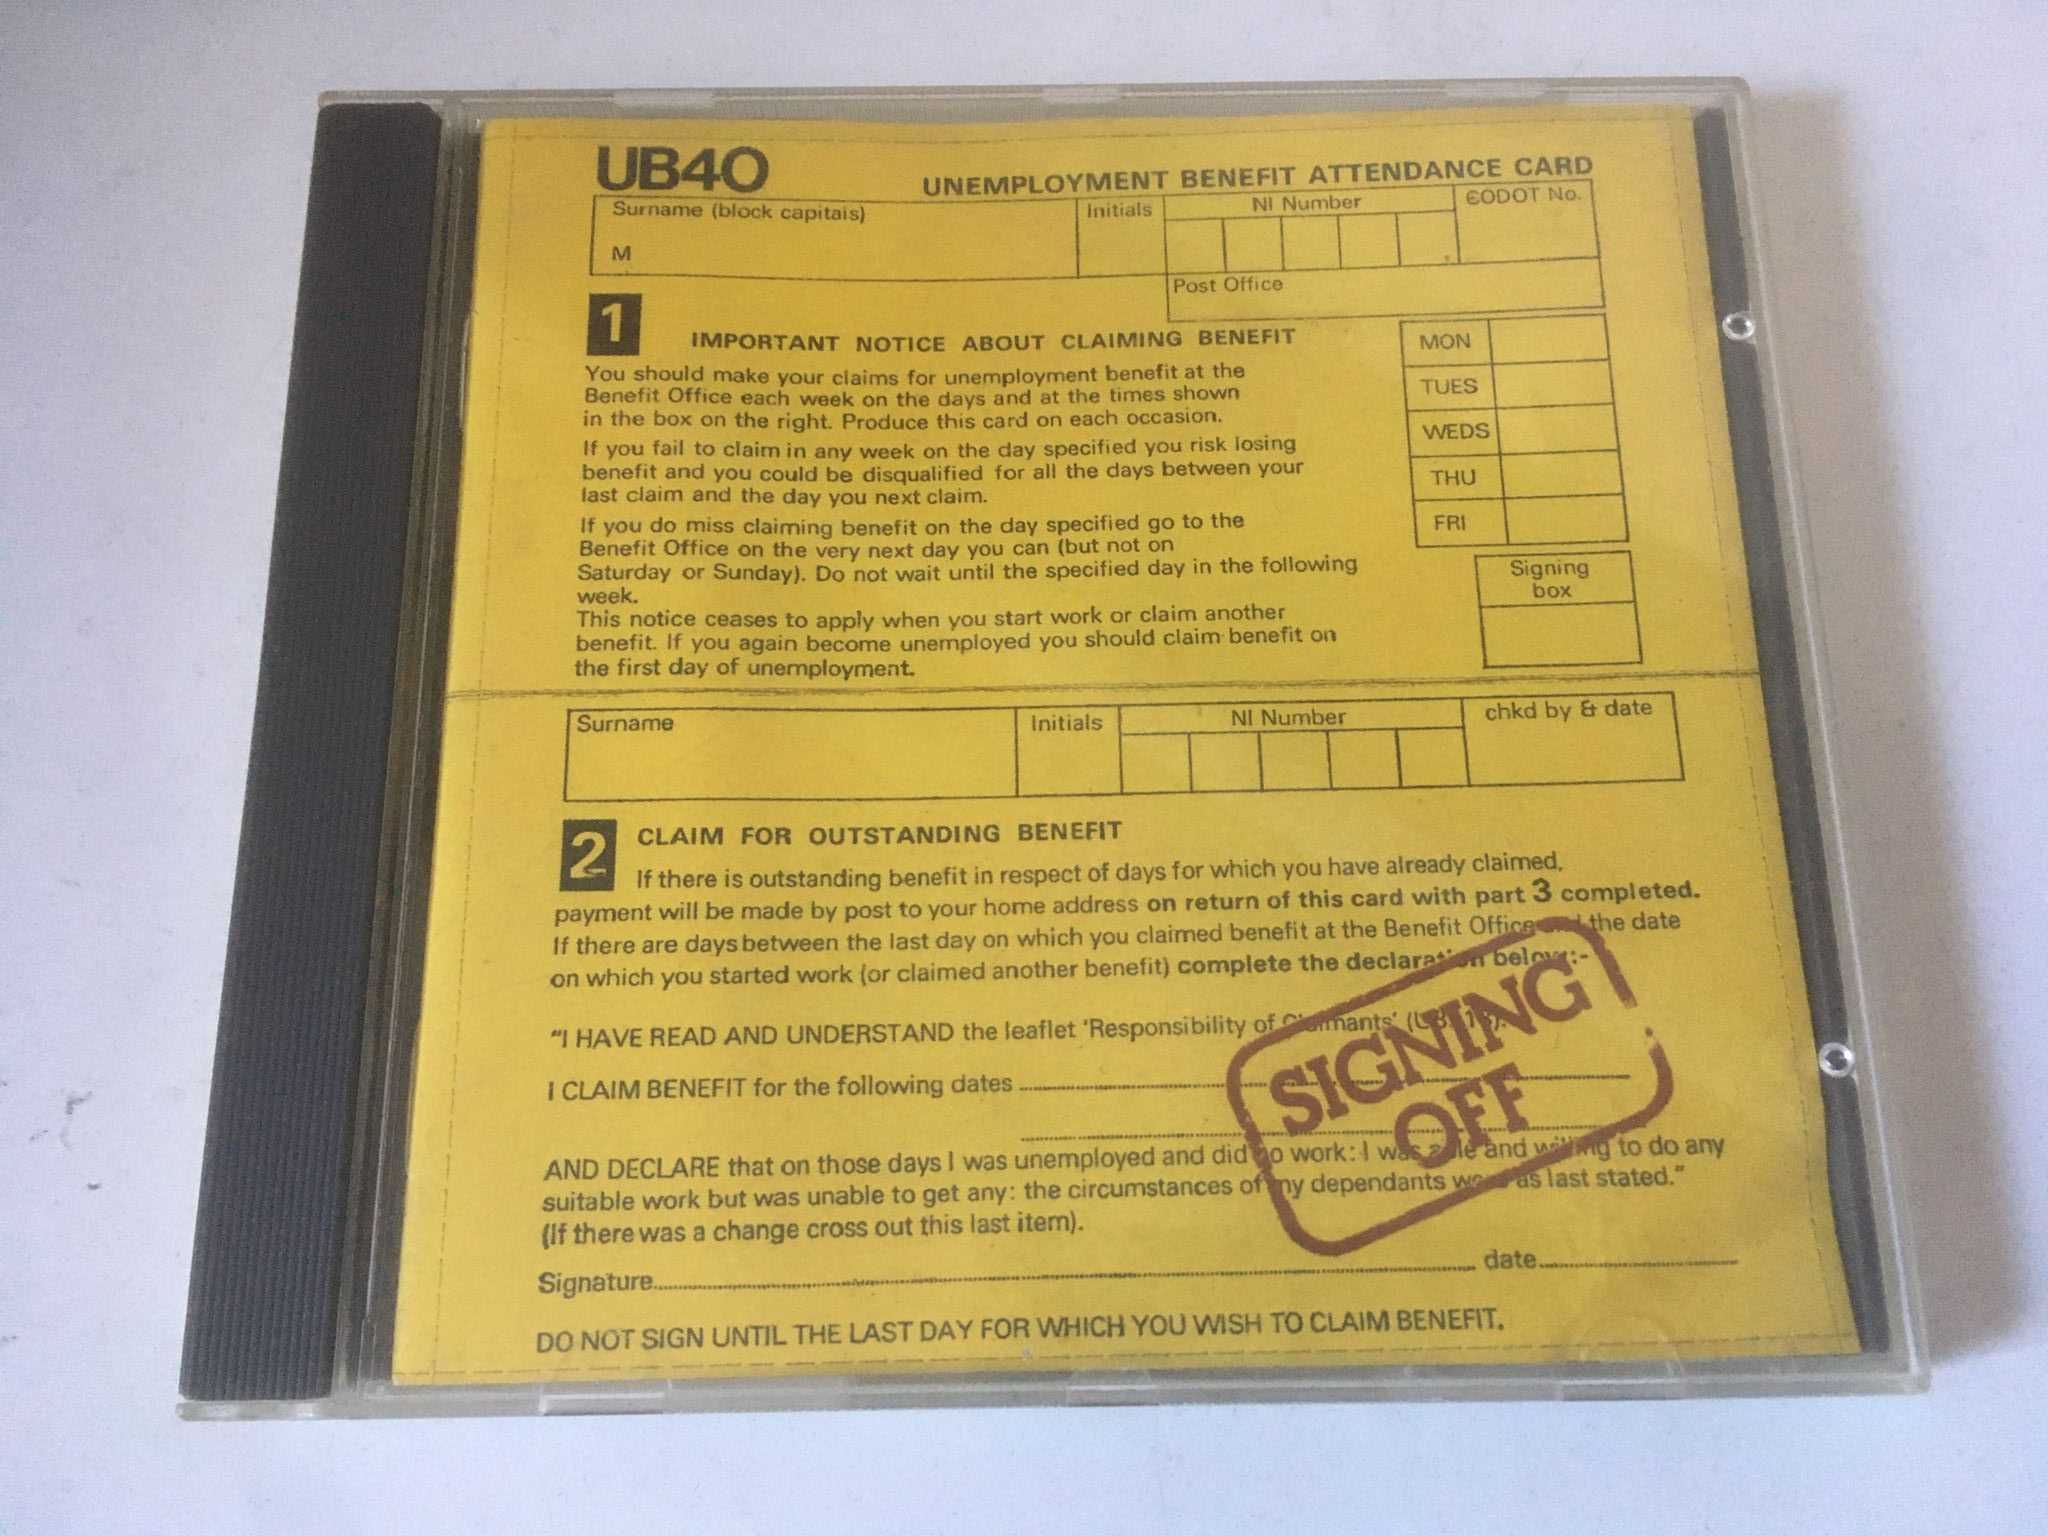 CD - UB40: Signing Off